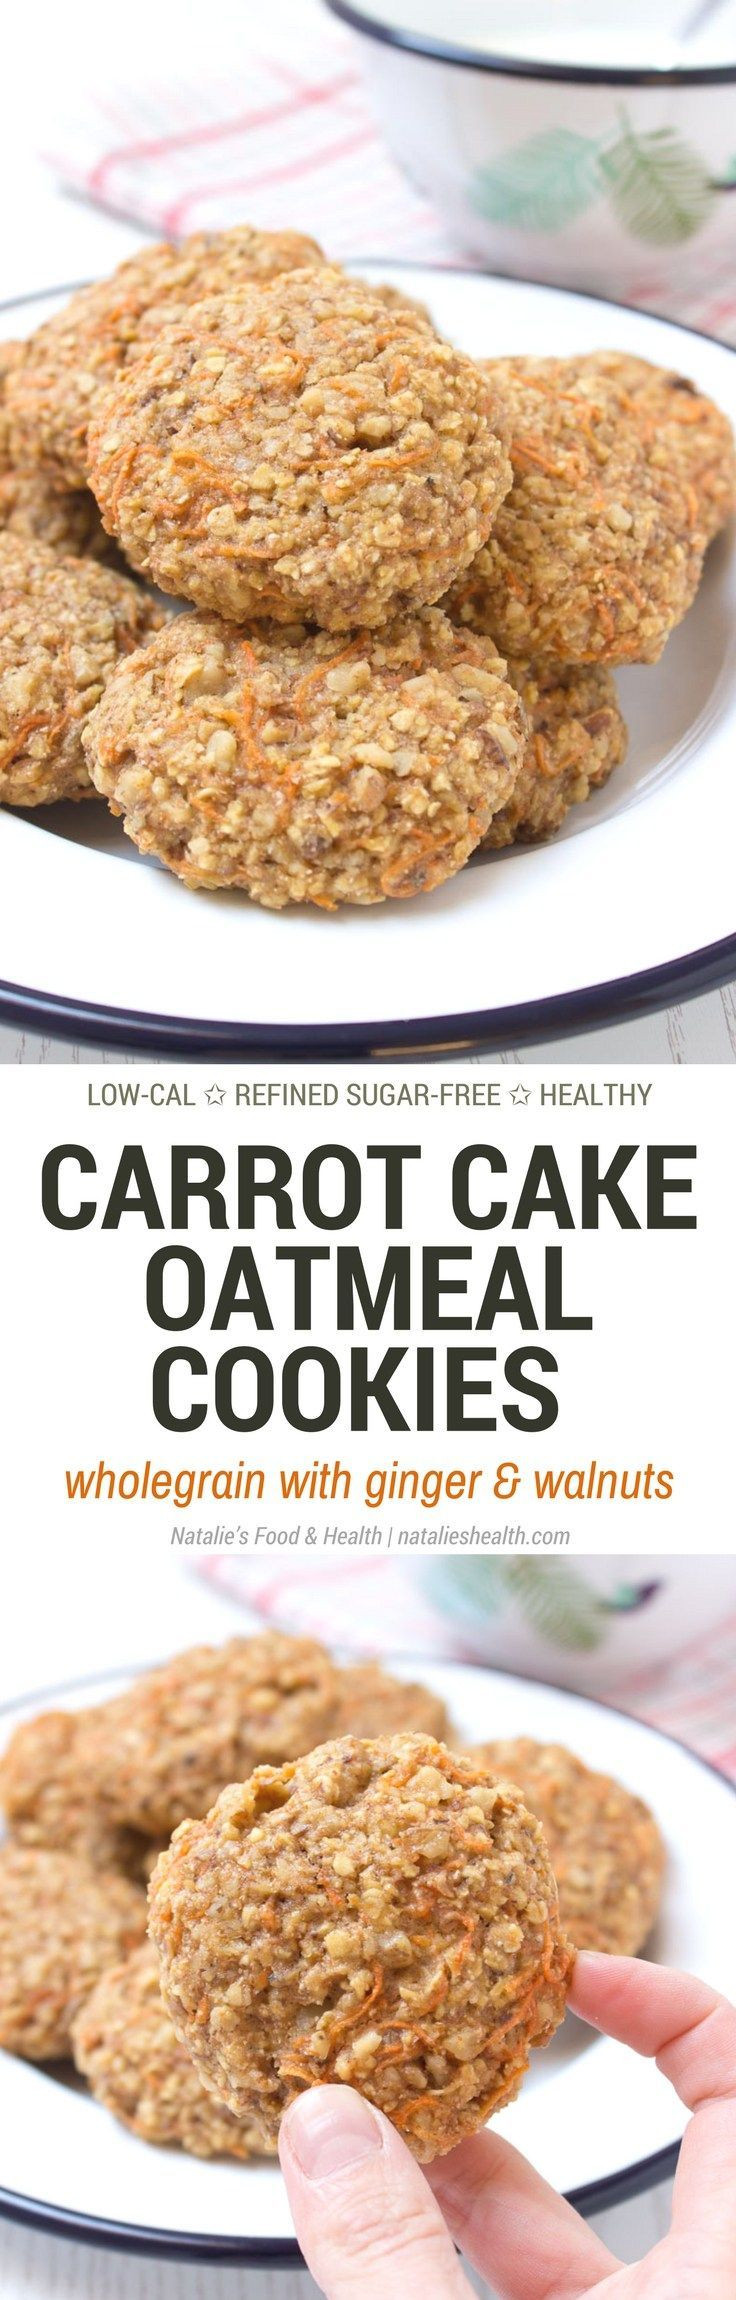 Low Fat Low Sugar Cookies
 Best 25 Low fat carrot cake ideas on Pinterest